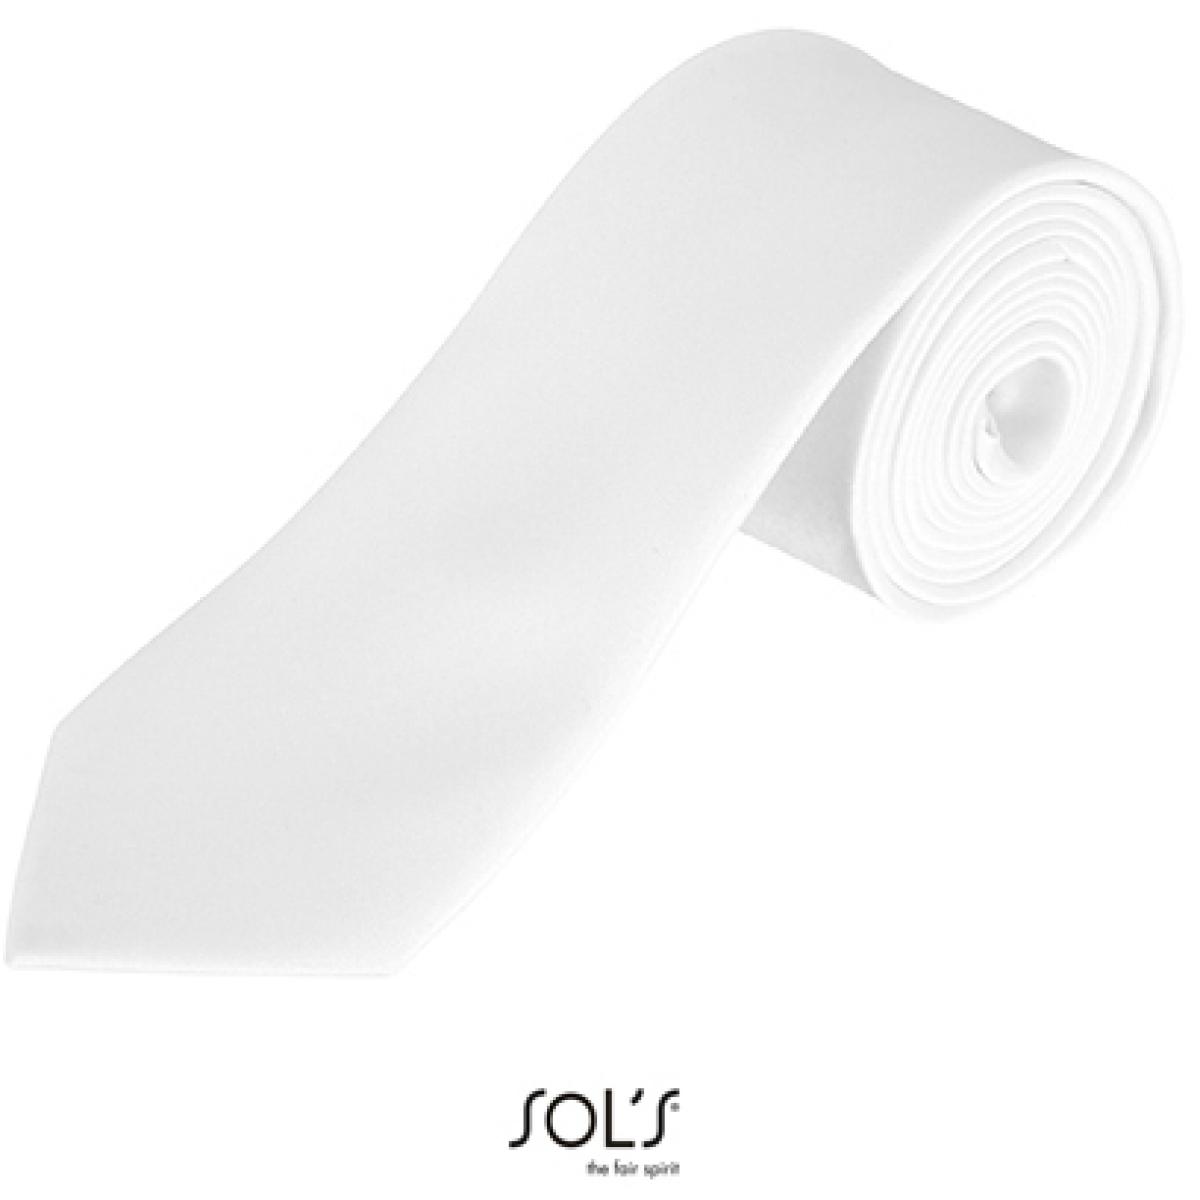 Hersteller: SOLs Herstellernummer: 02932 Artikelbezeichnung: Herren Krawatte Garner Tie - Länge: 150 cm, Breite: 7 cm" Farbe: White